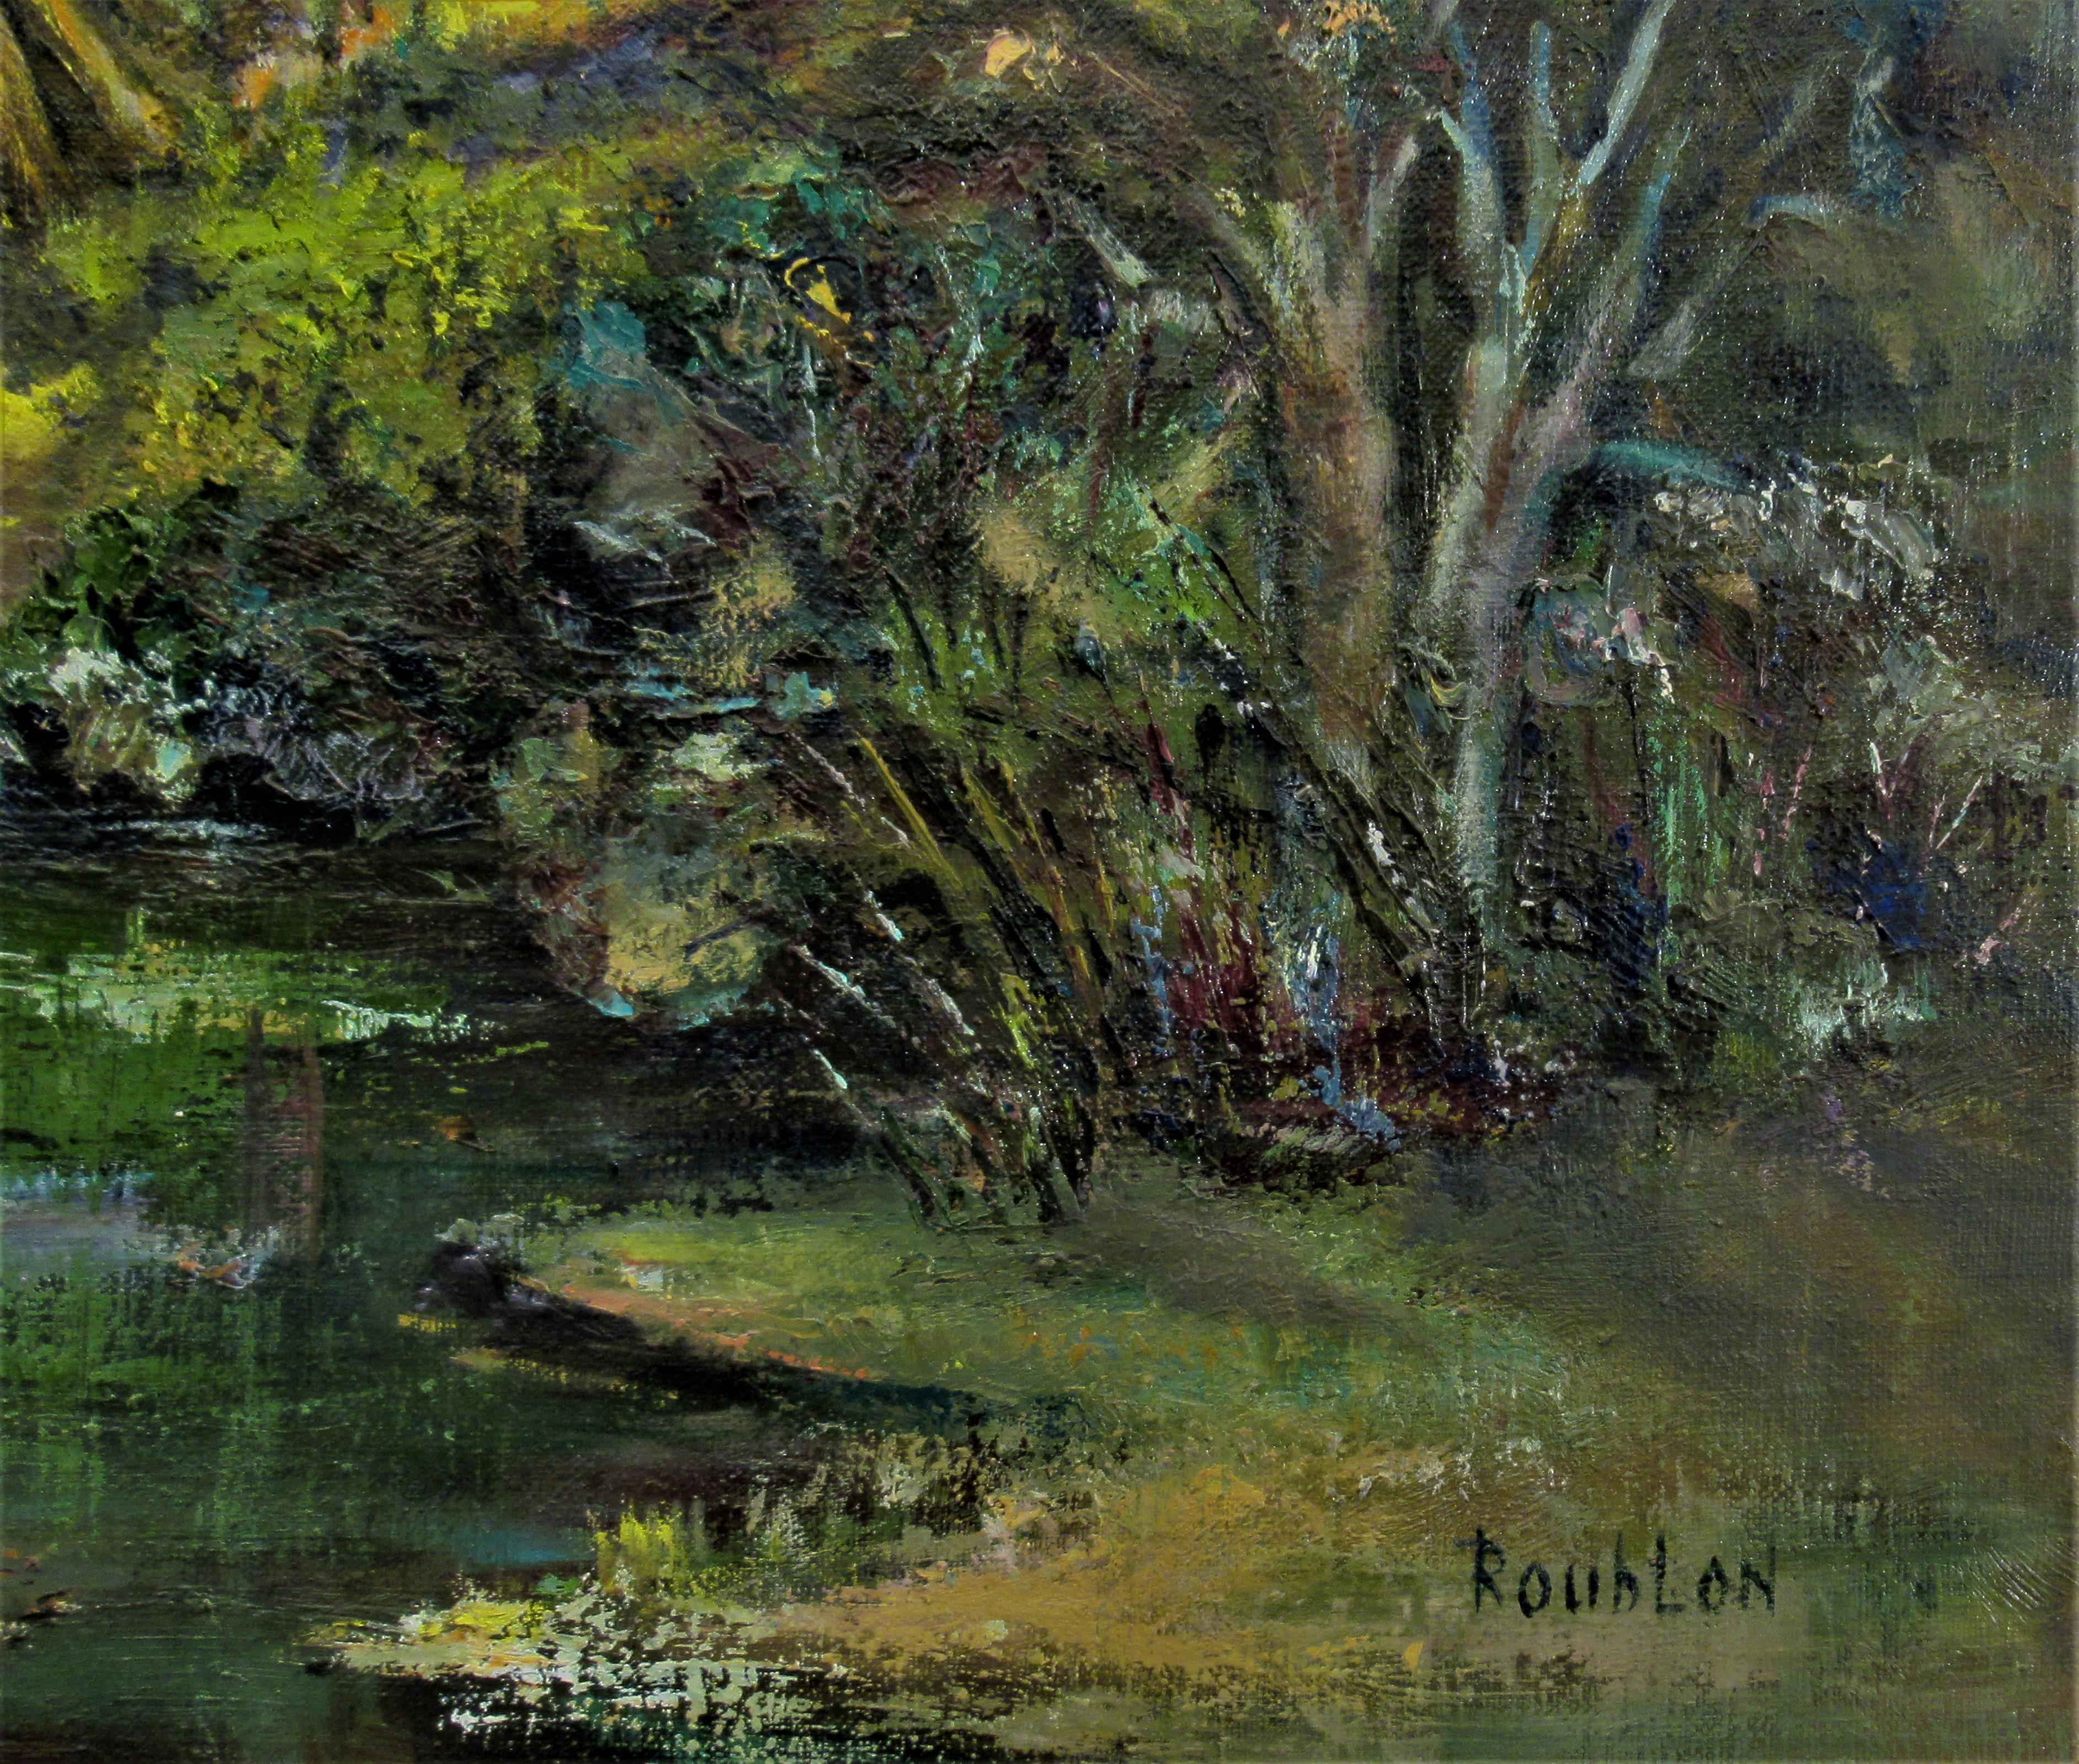 roublon